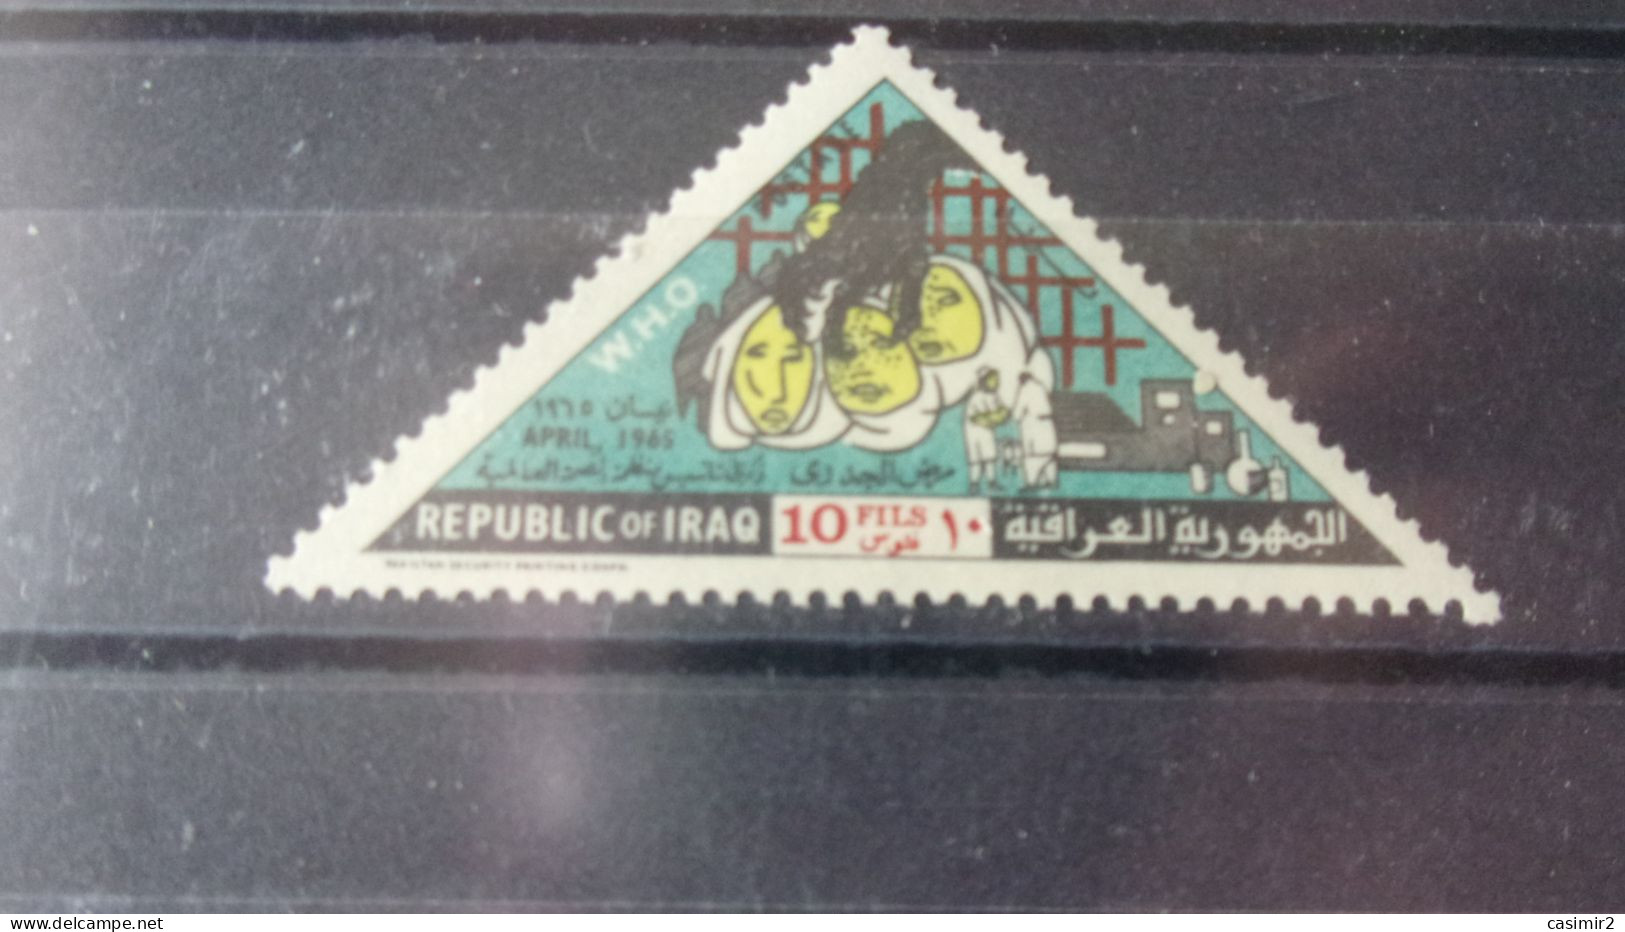 IRAQ YVERT N°409** - Iraq